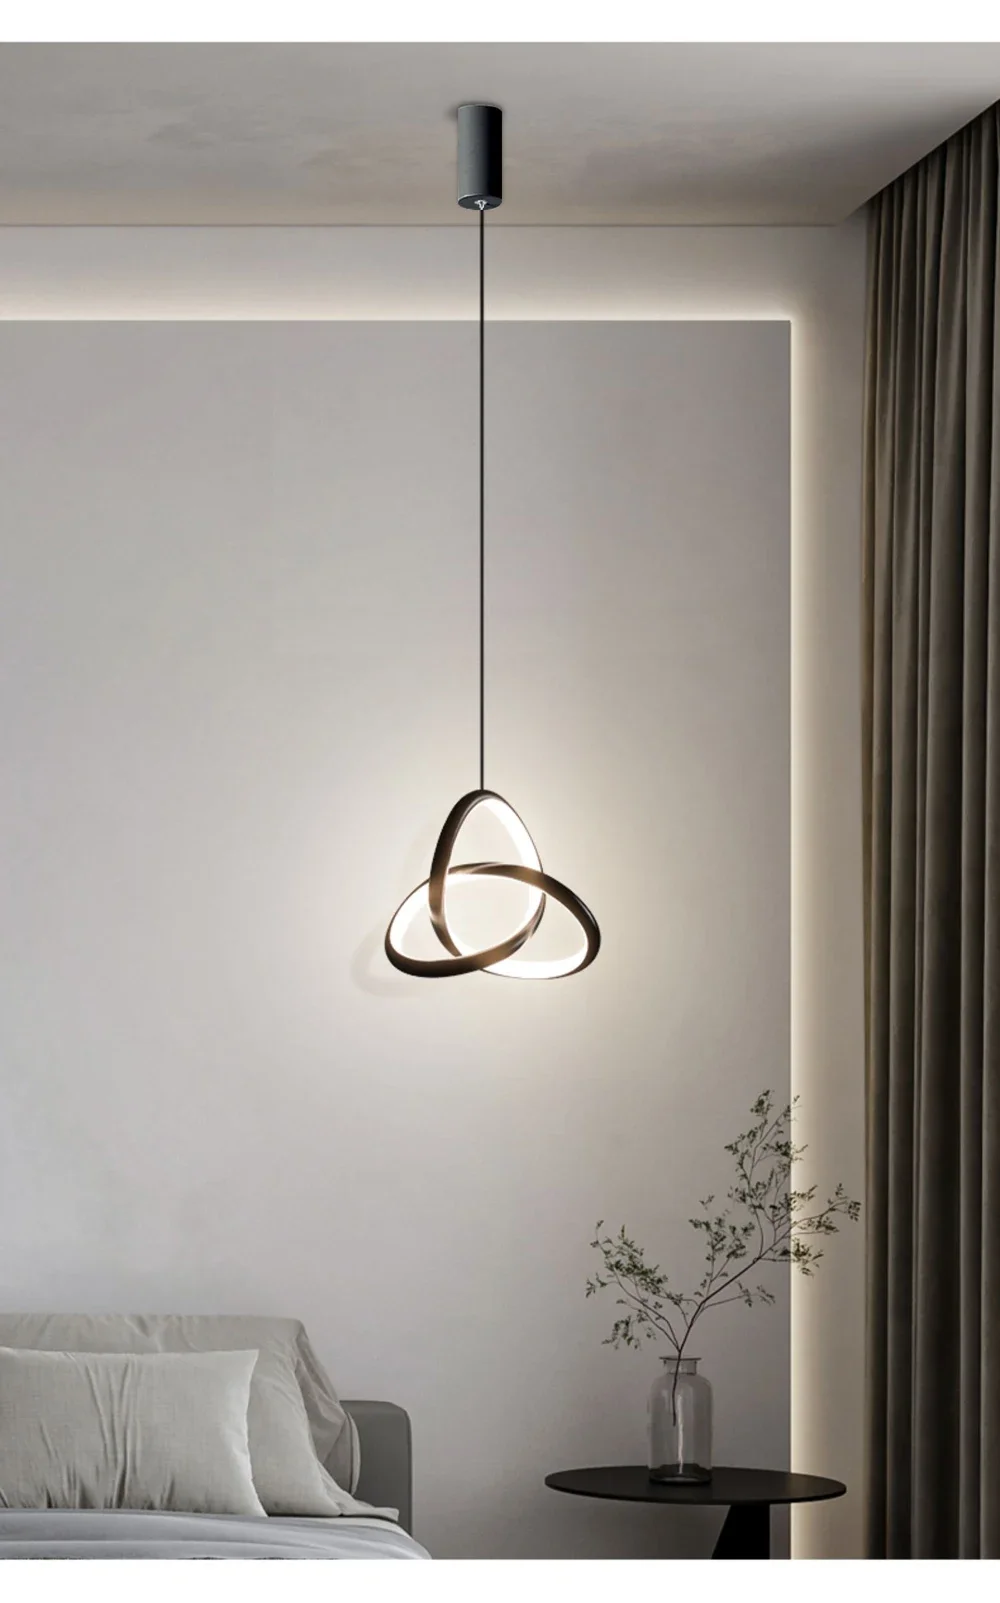  pendant light modern decor art designer chandeliers for bedroom study living room home thumb200